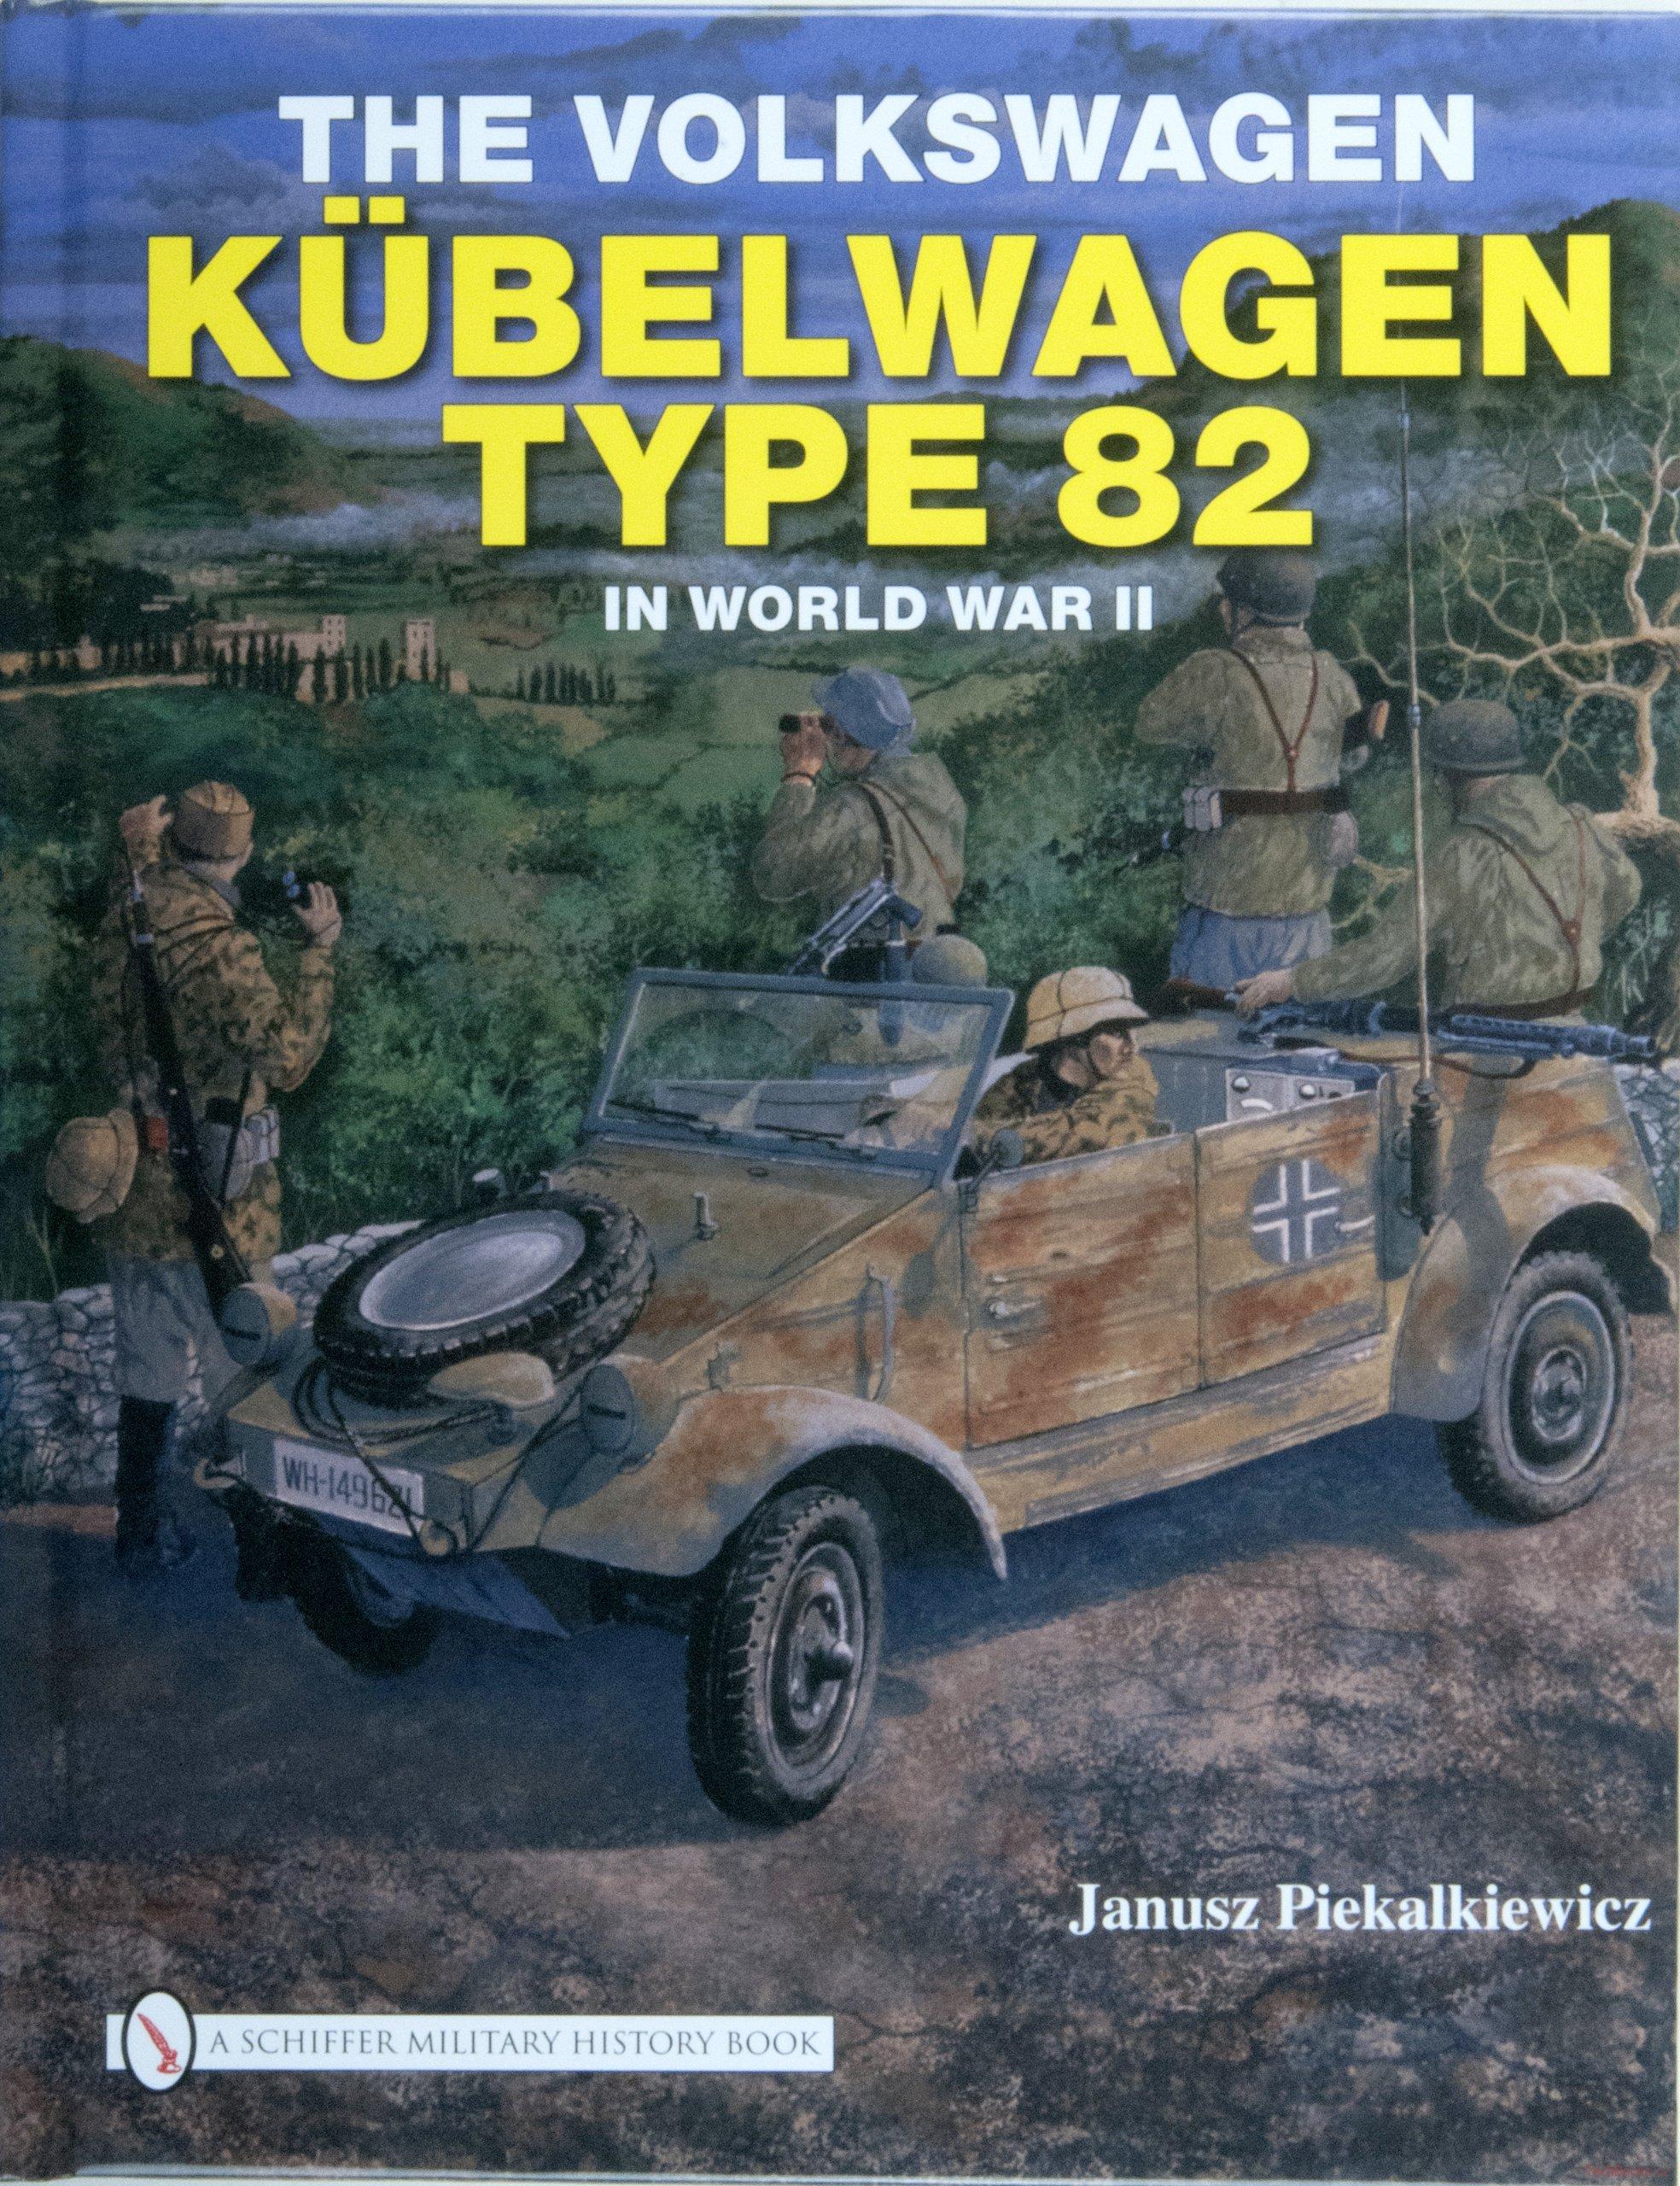 The Volkswagen Kübelwagen Type 82 in World War II